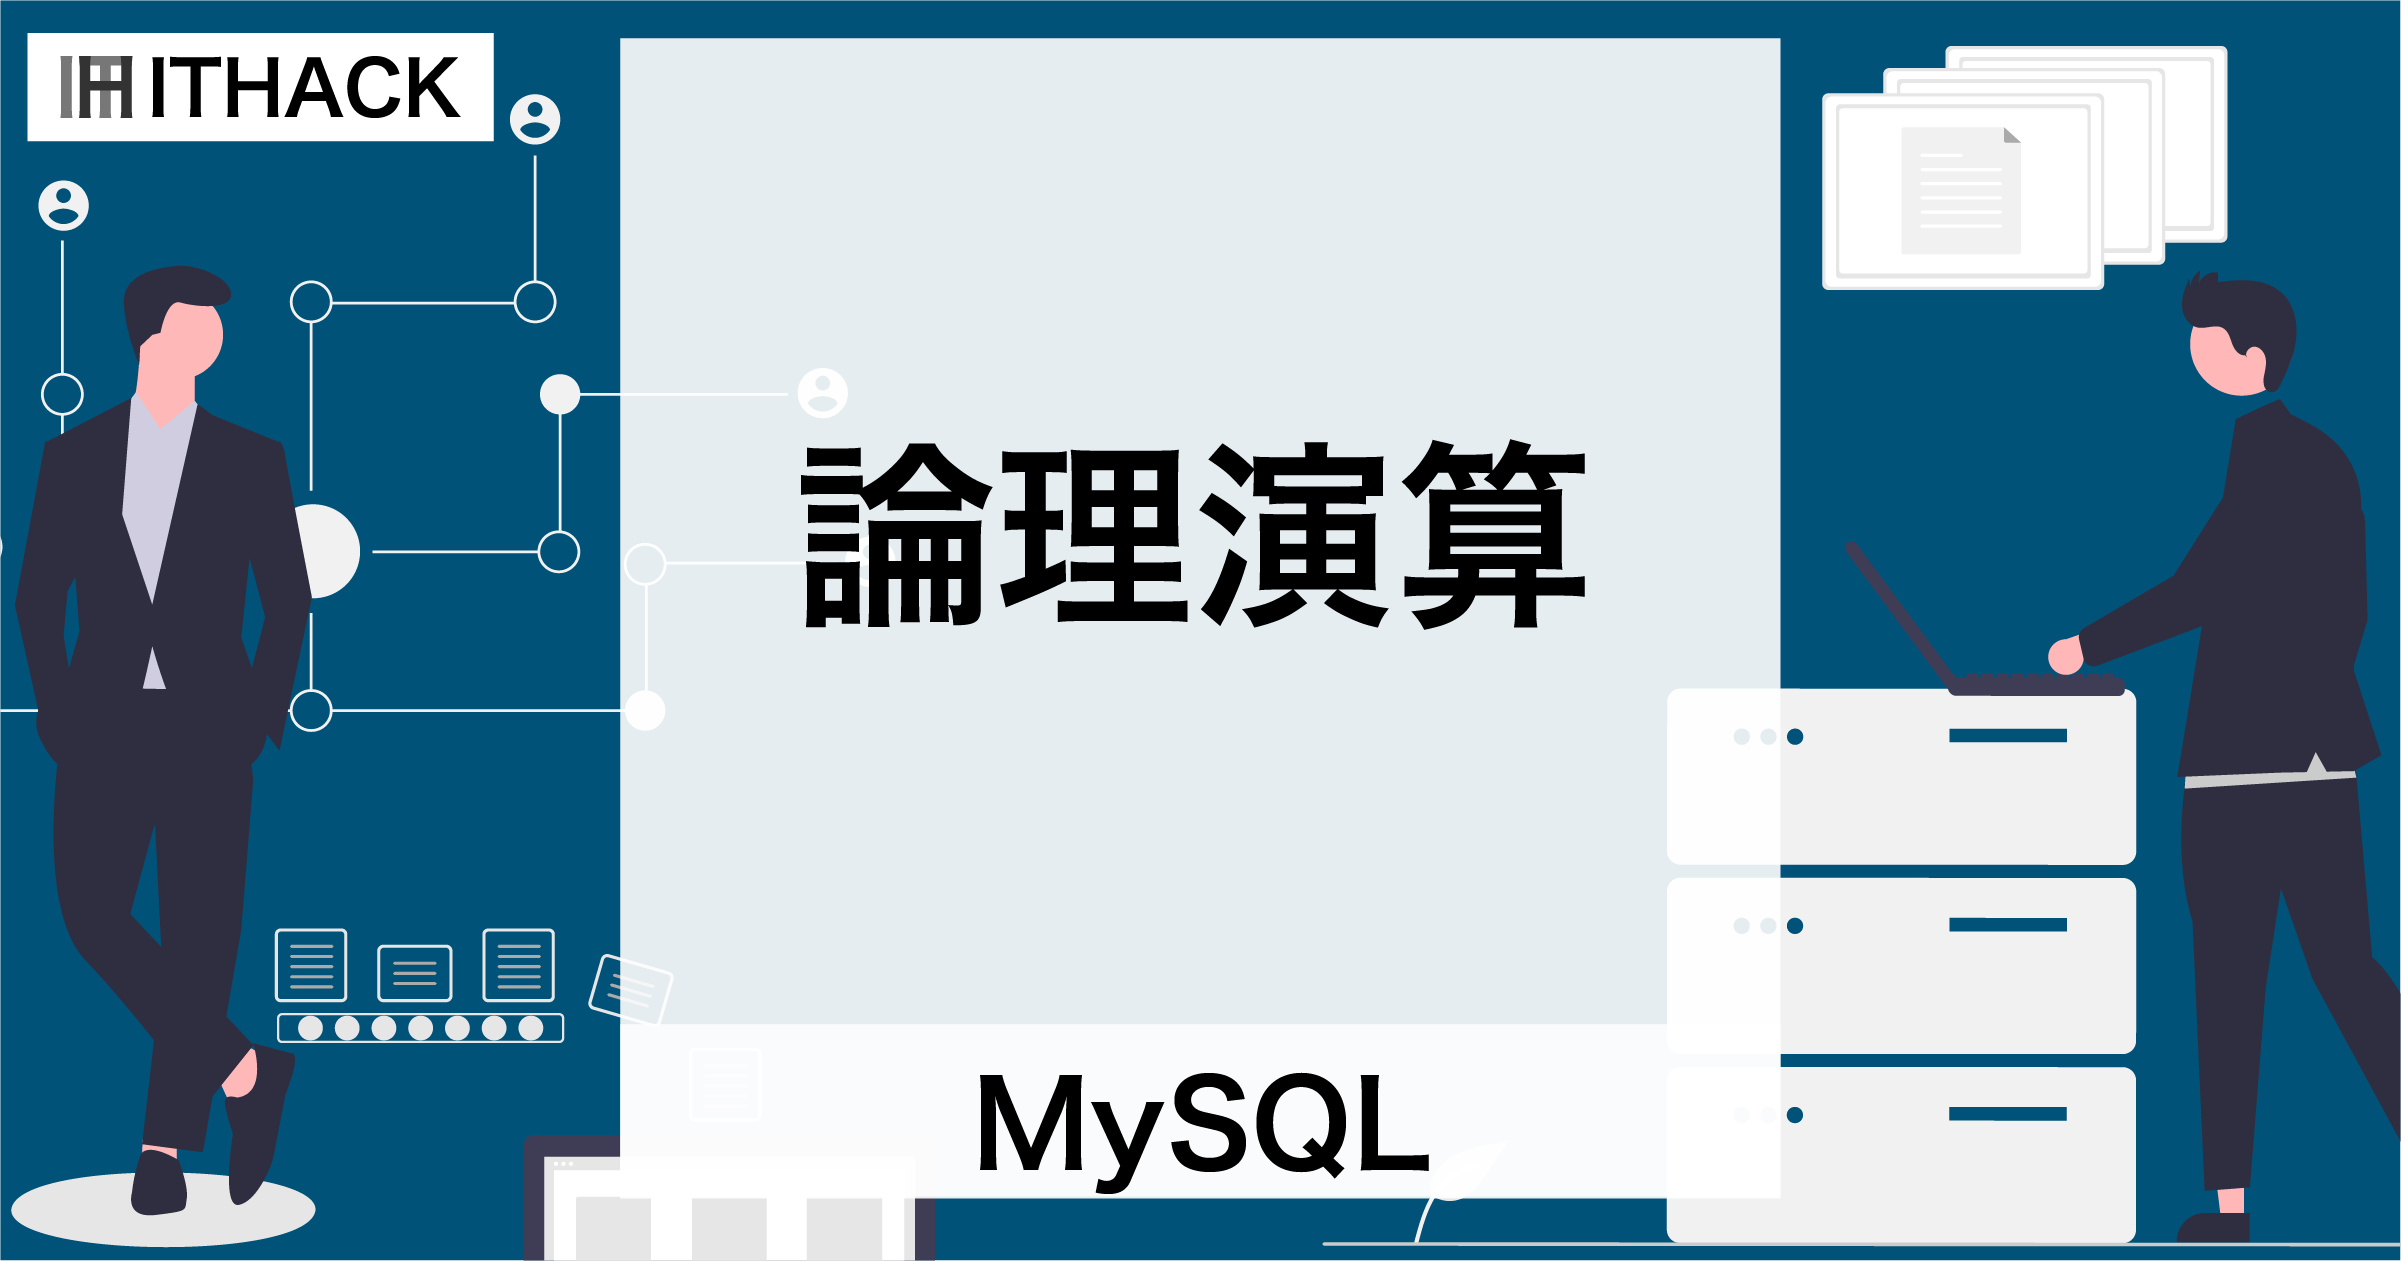 【MySQL】論理演算 - 真偽値の演算と演算子